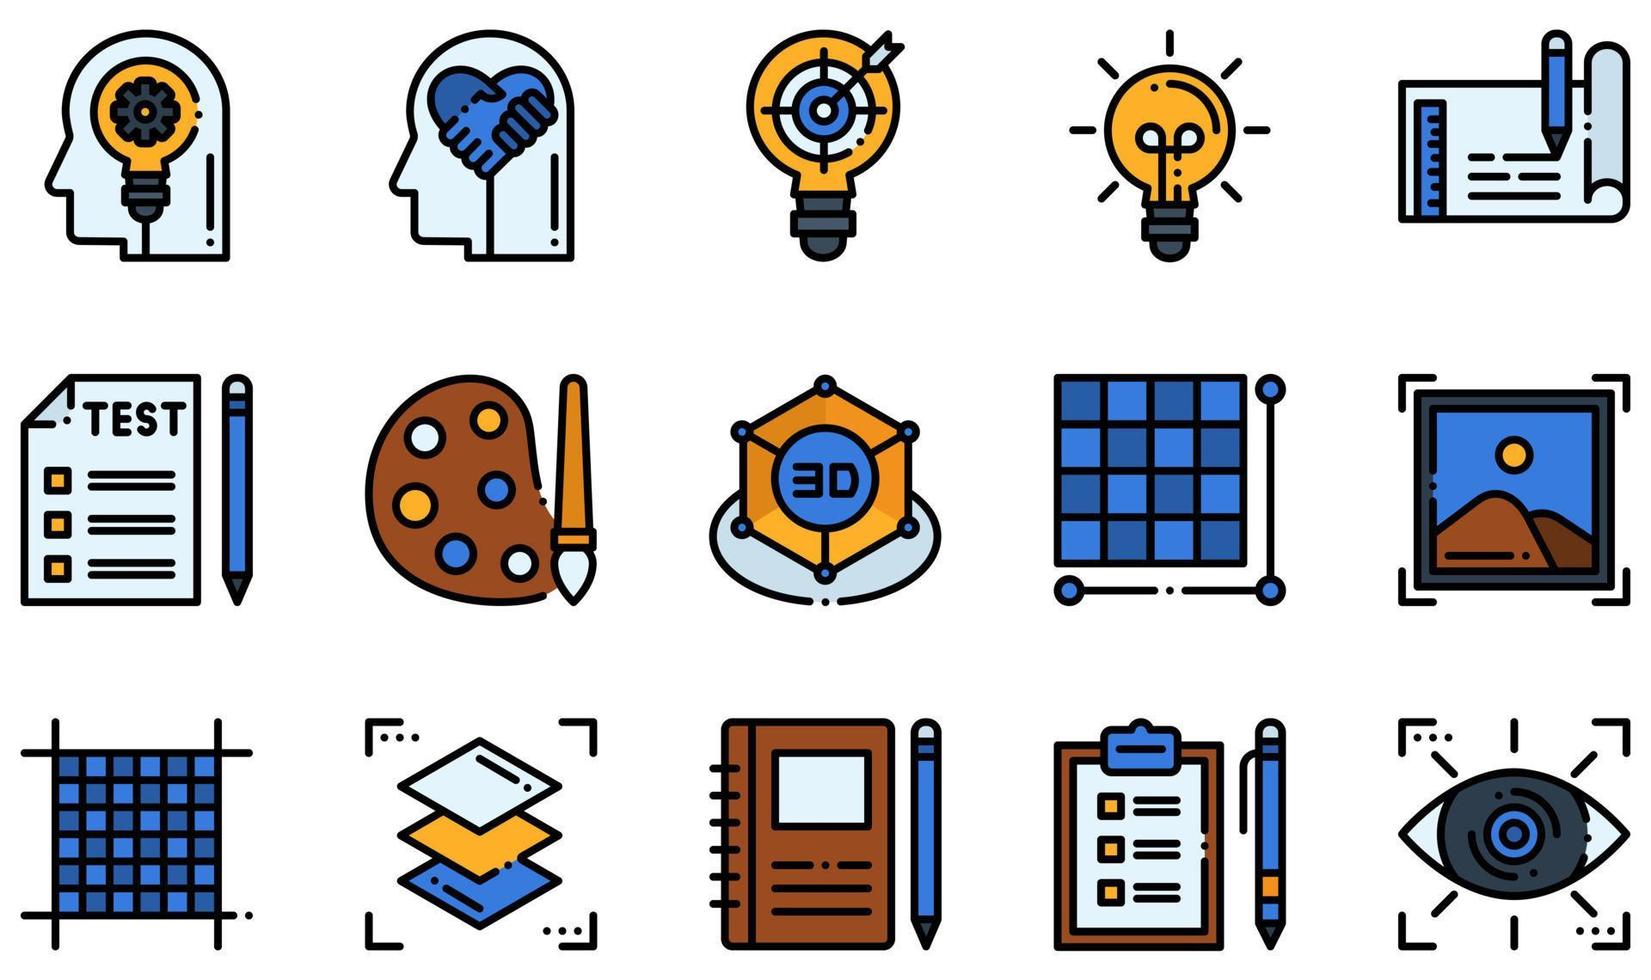 set di icone vettoriali relative al design thinking. contiene icone come pensiero creativo, empatia, prototipo, design 3d, pixel, album da disegno e altro ancora.